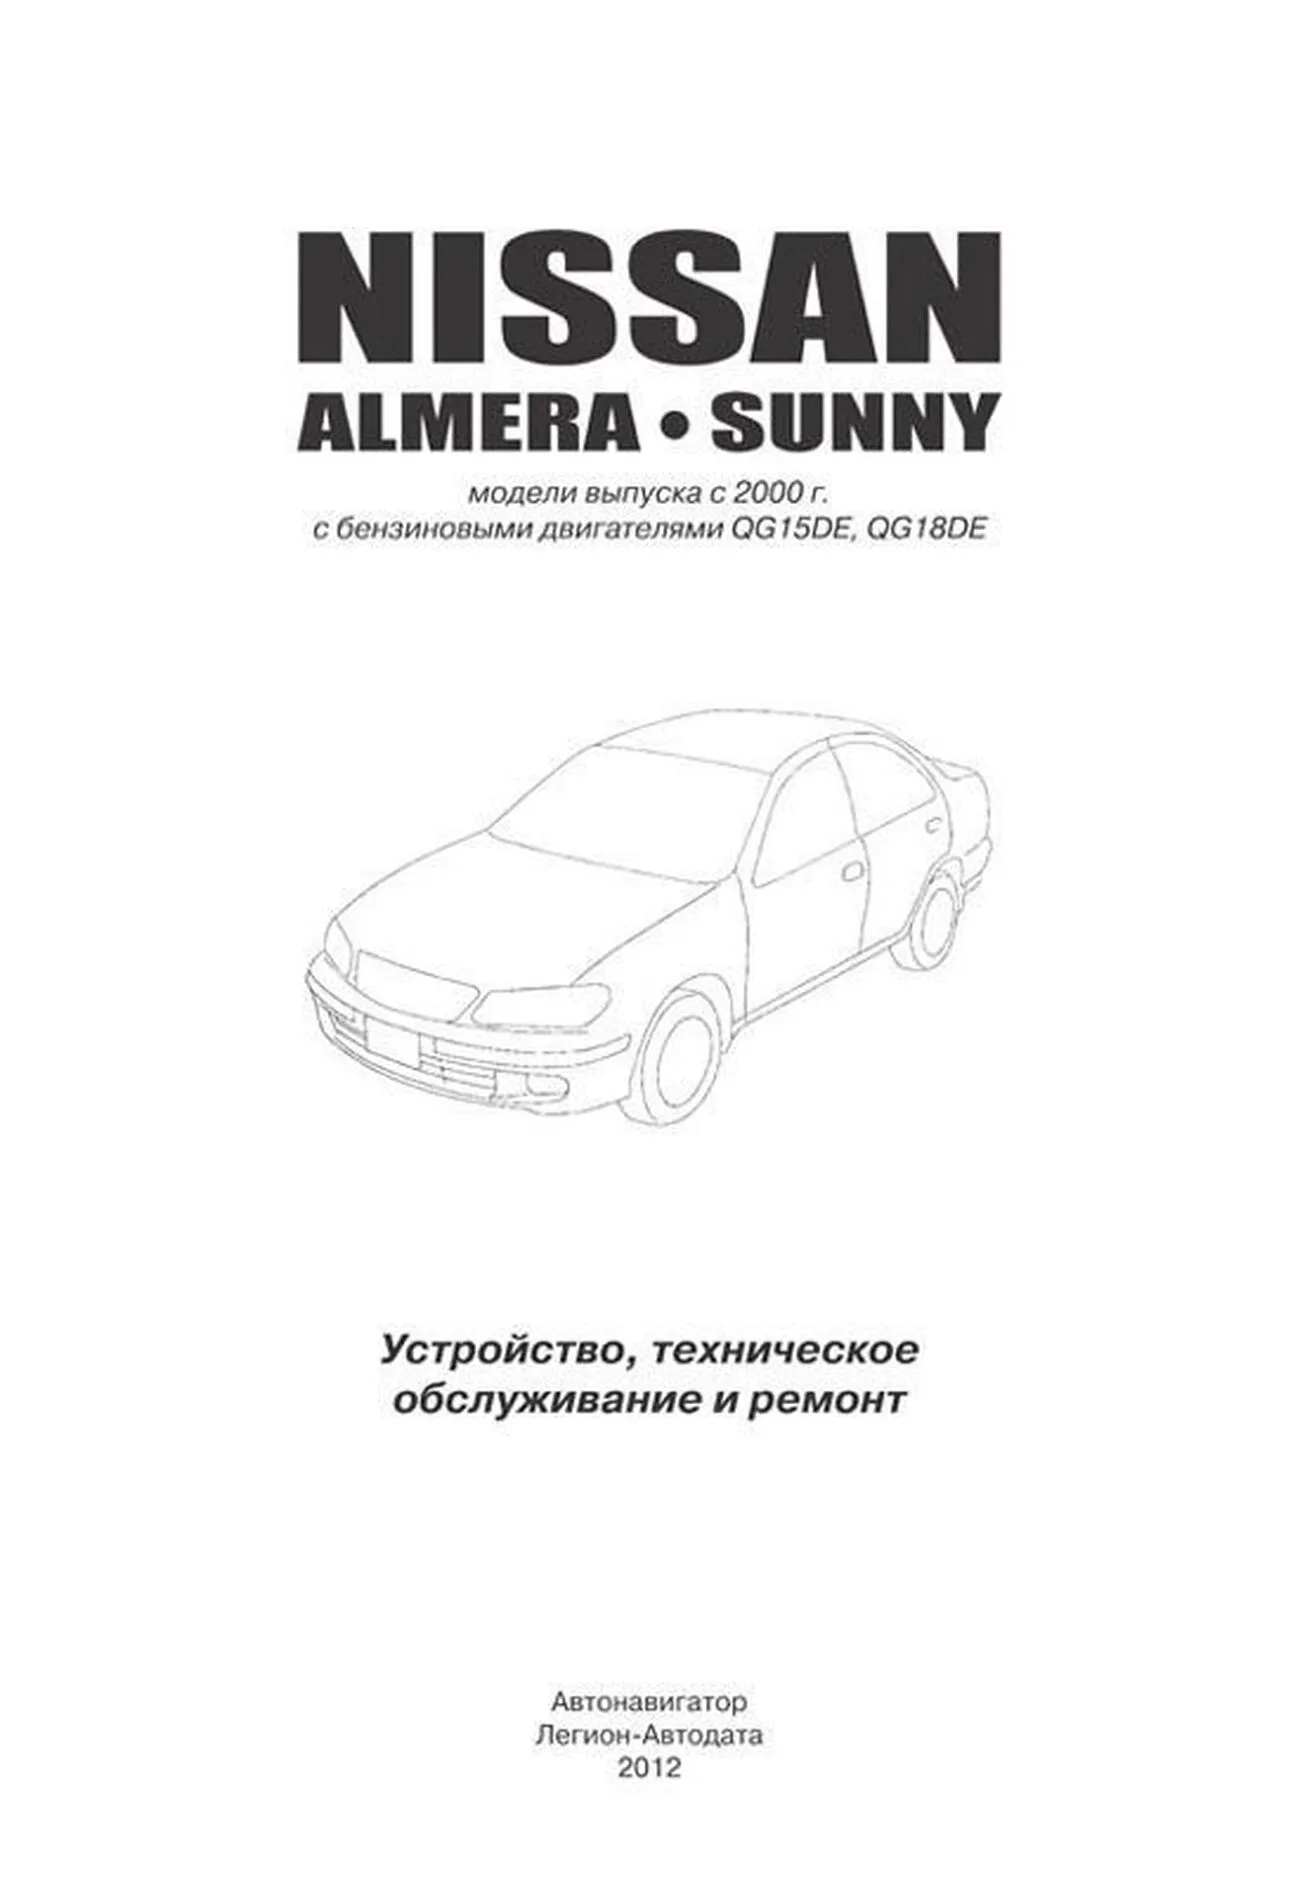 Книга: NISSAN ALMERA N16 / NISSAN SUNNY (б) с 2000 г.в., рем., экспл., то | Автонавигатор